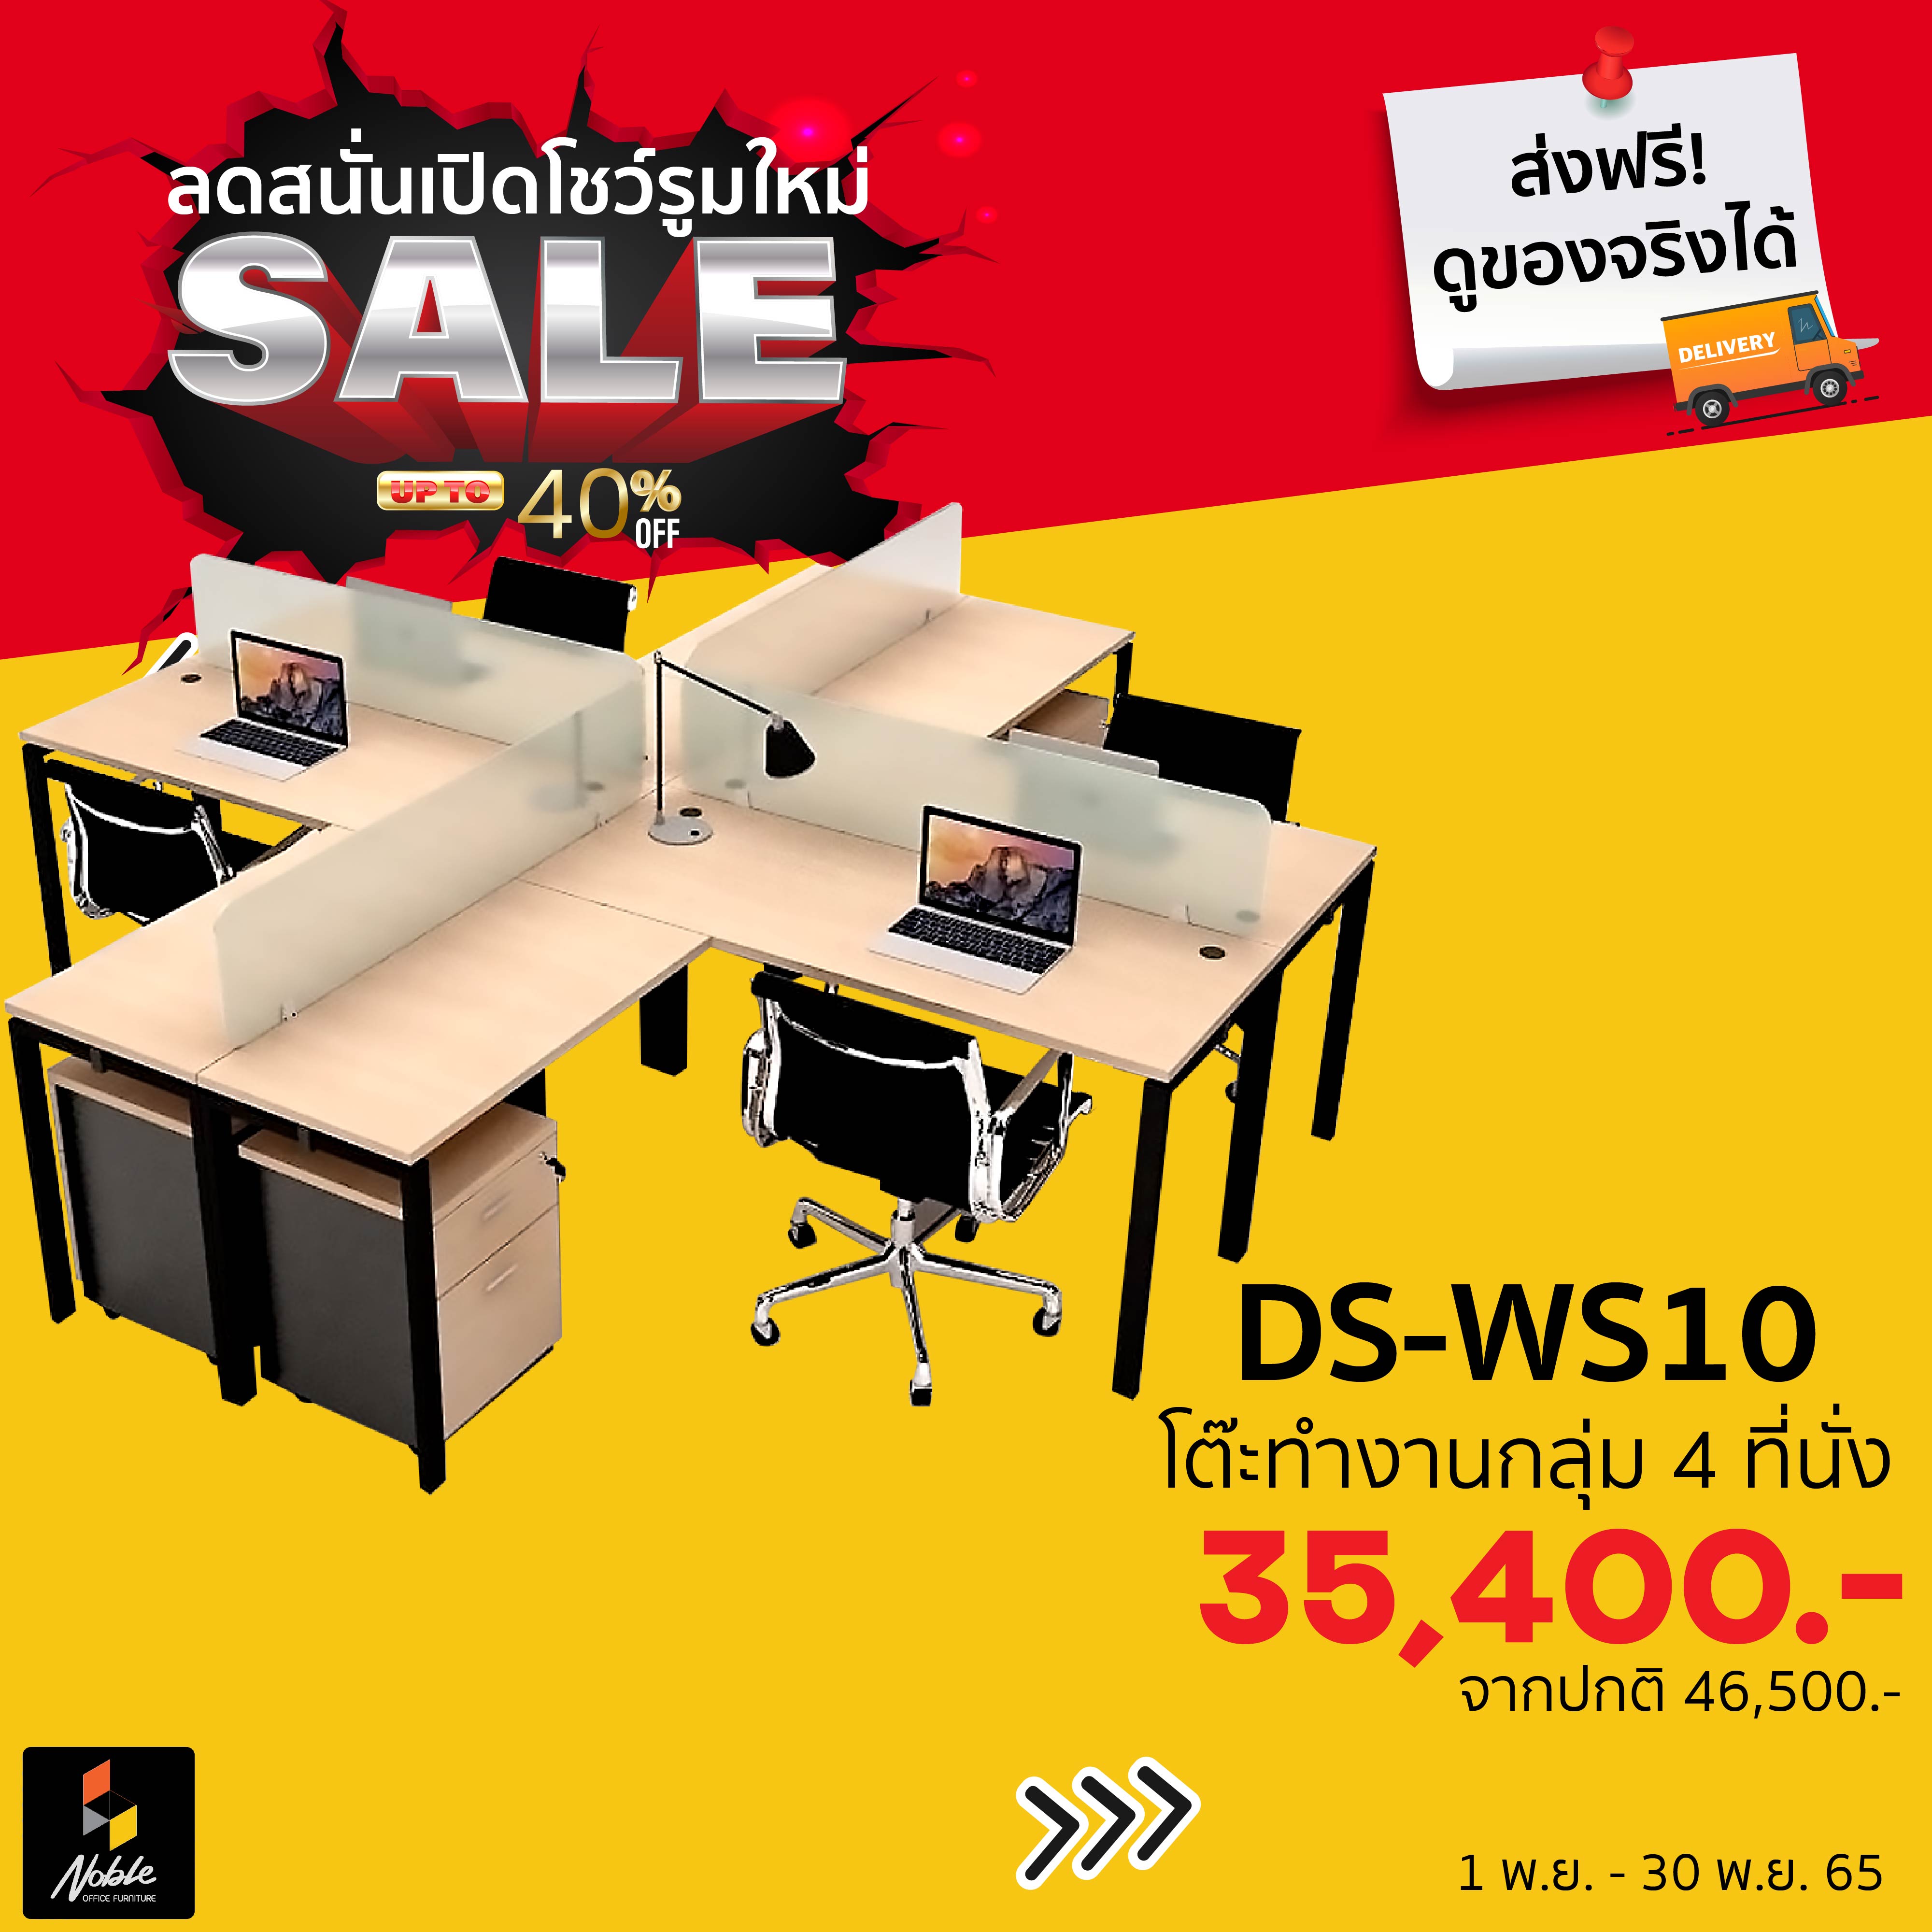 DS-WS10 โต๊ะทำงานกลุ่ม 4 ที่นั่งทรงแอล